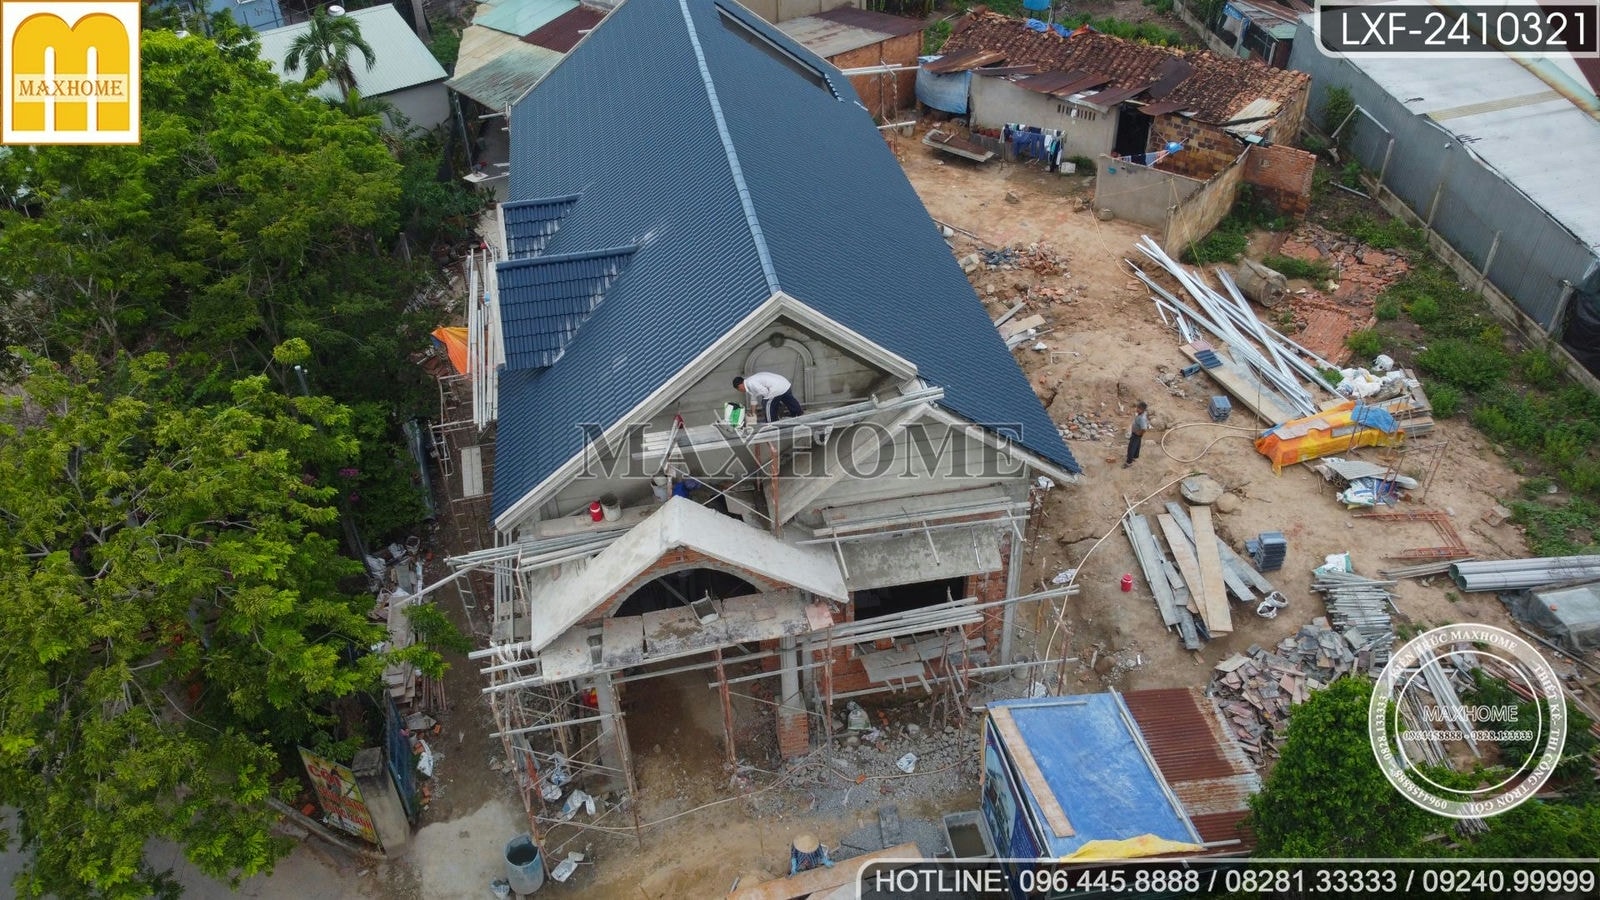 Ghé thăm tiến độ công trình nhà vườn mái Thái hoành tráng tại Bình Dương